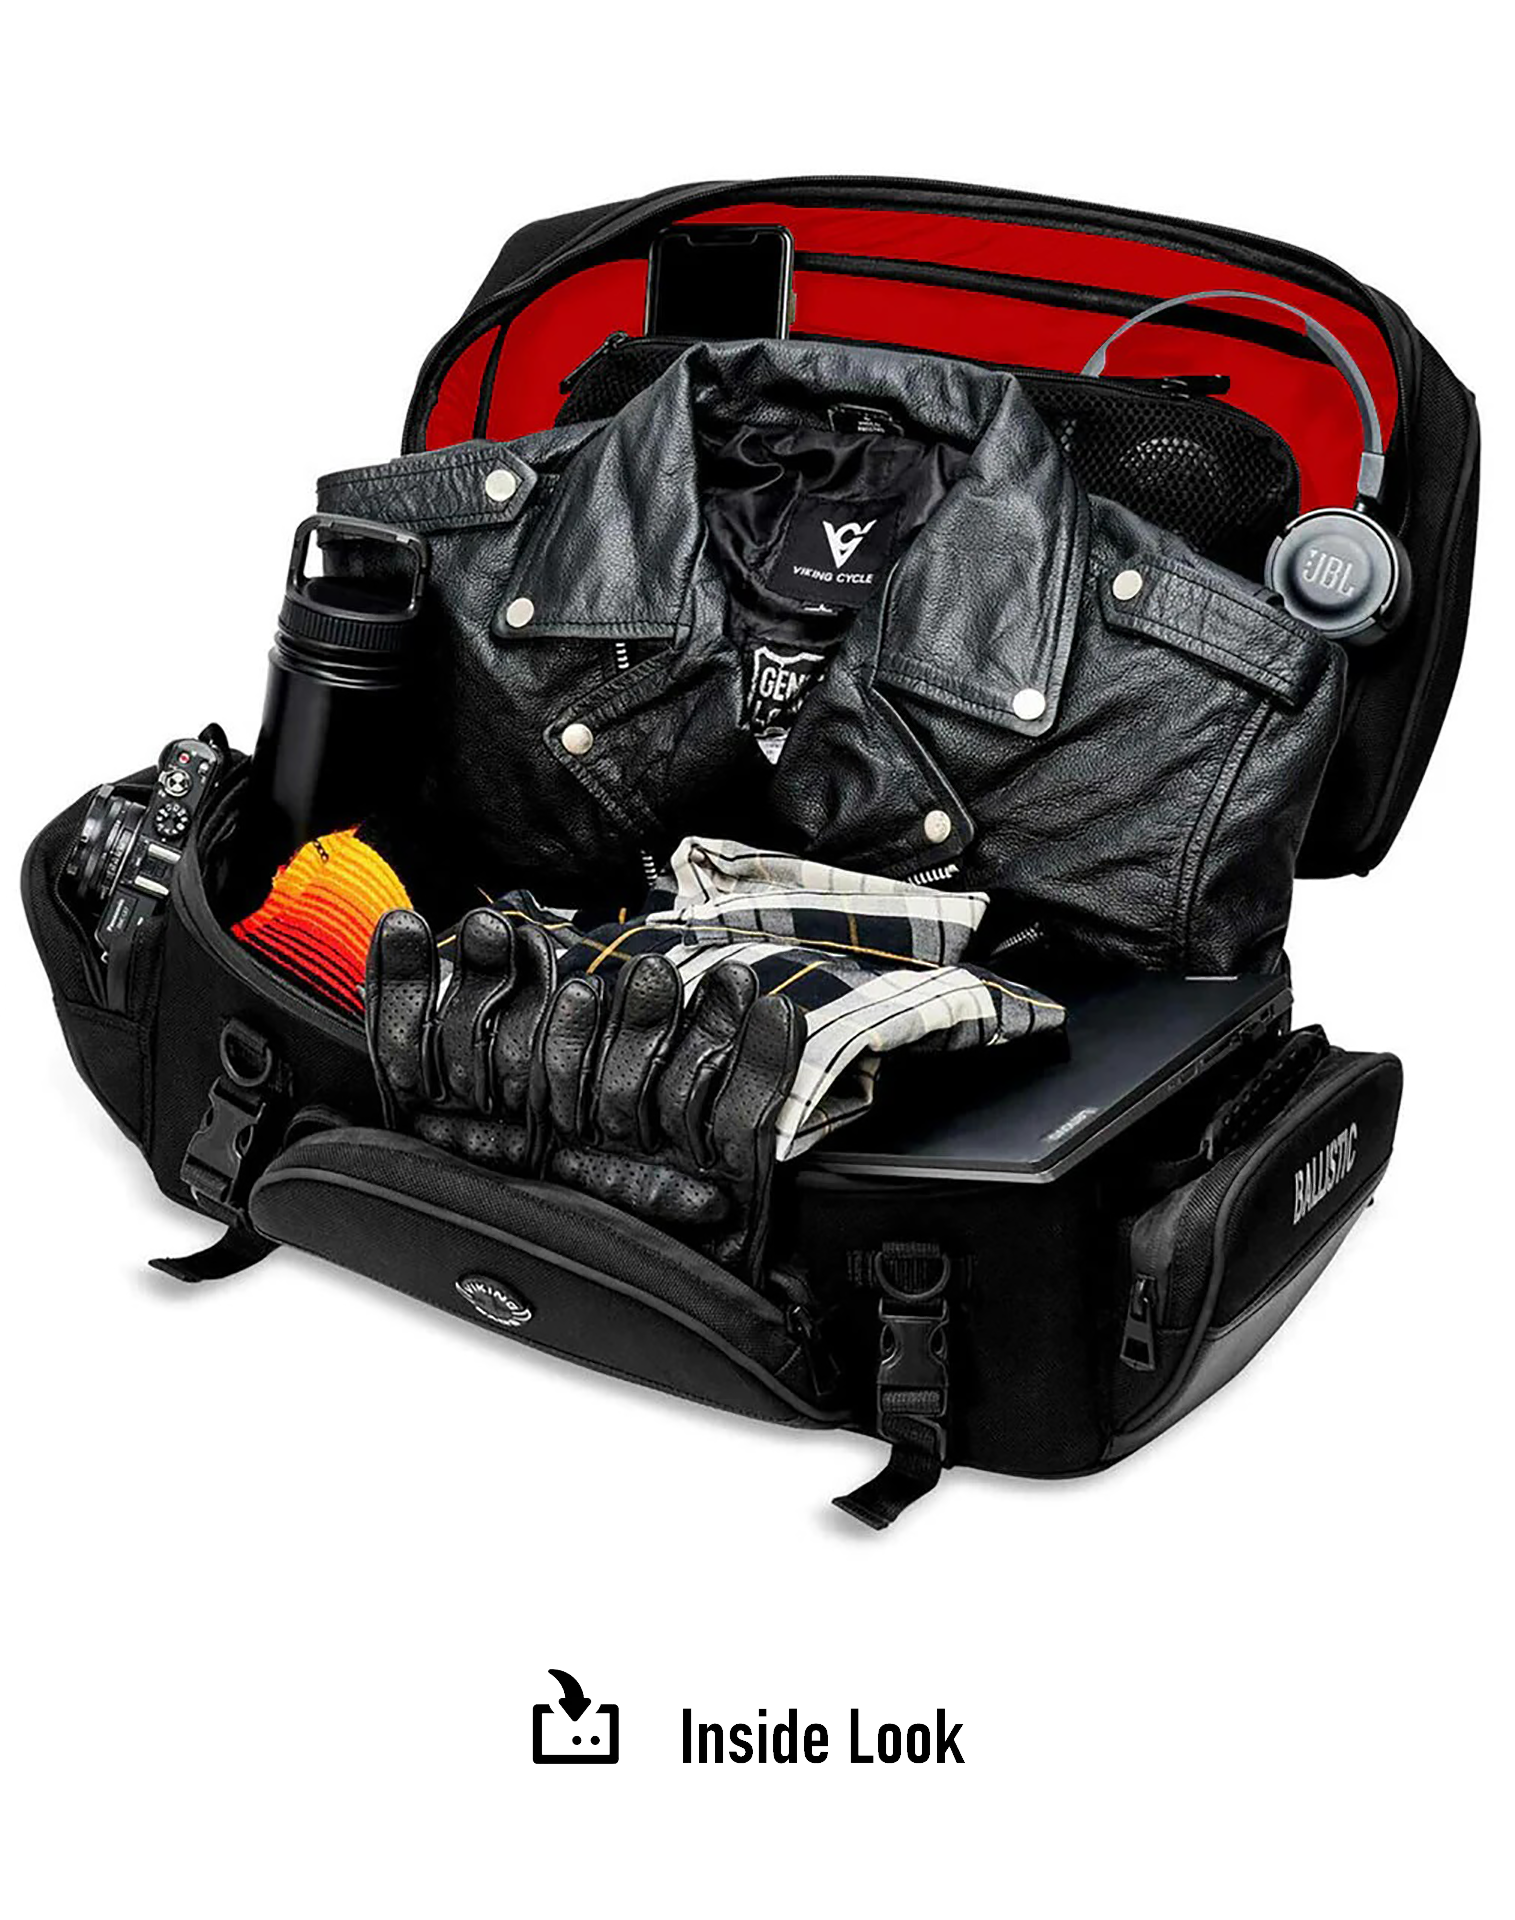 43L - Voyage Elite XL Motorcycle Luggage Rack Bag